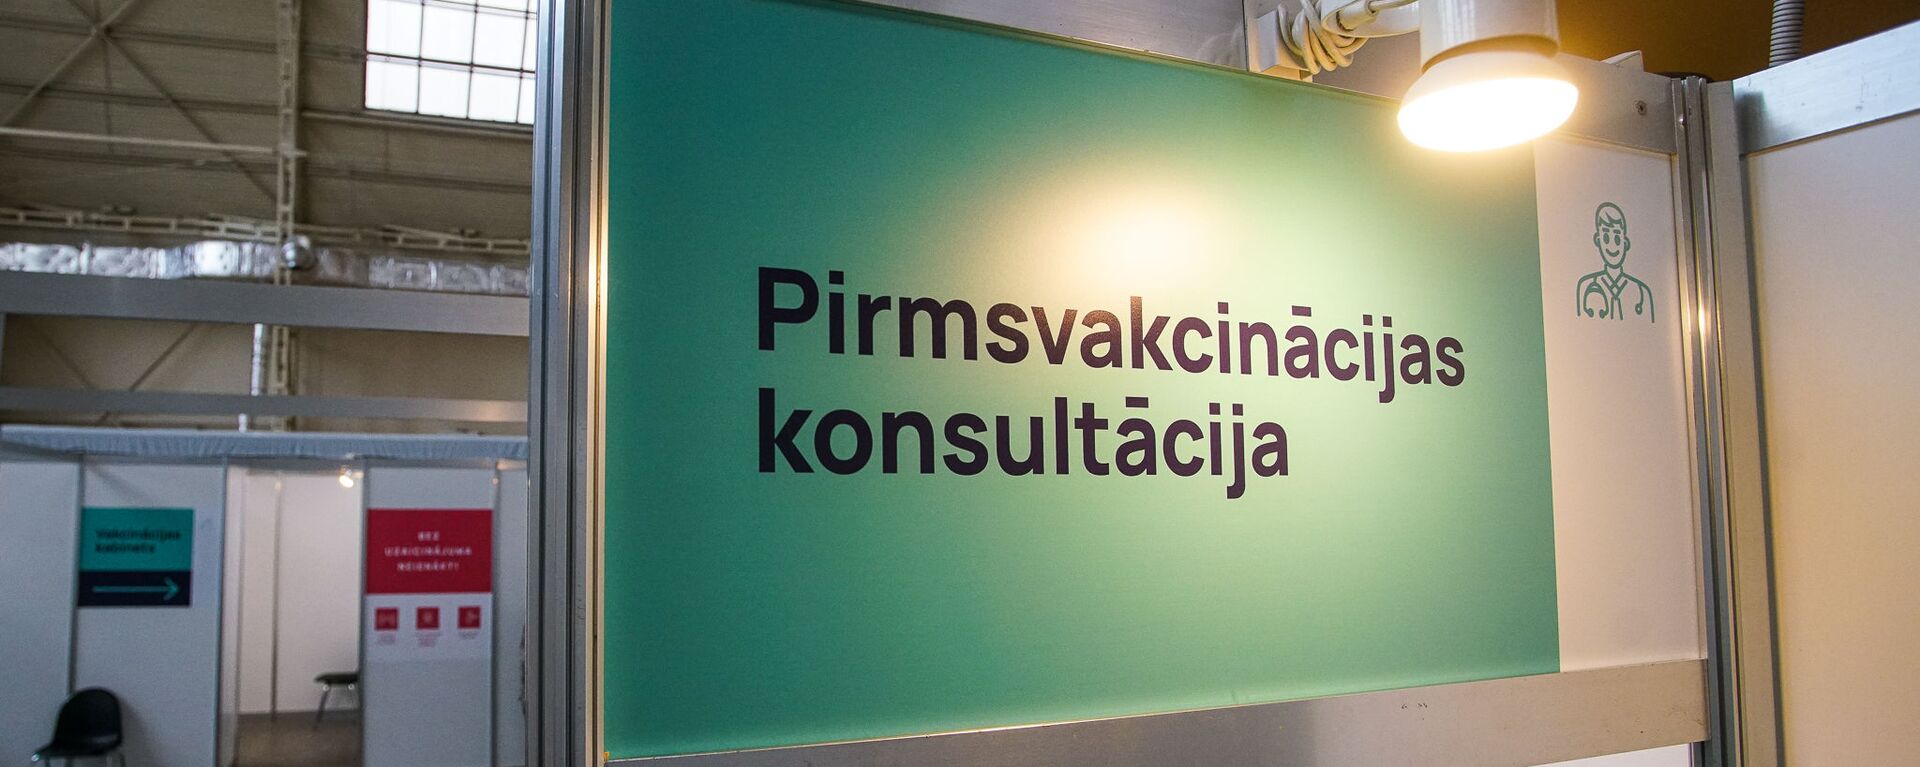 Центр вакцинации открылся в Гастрономическом павильоне Центрального рынка в Риге - Sputnik Latvija, 1920, 03.04.2021